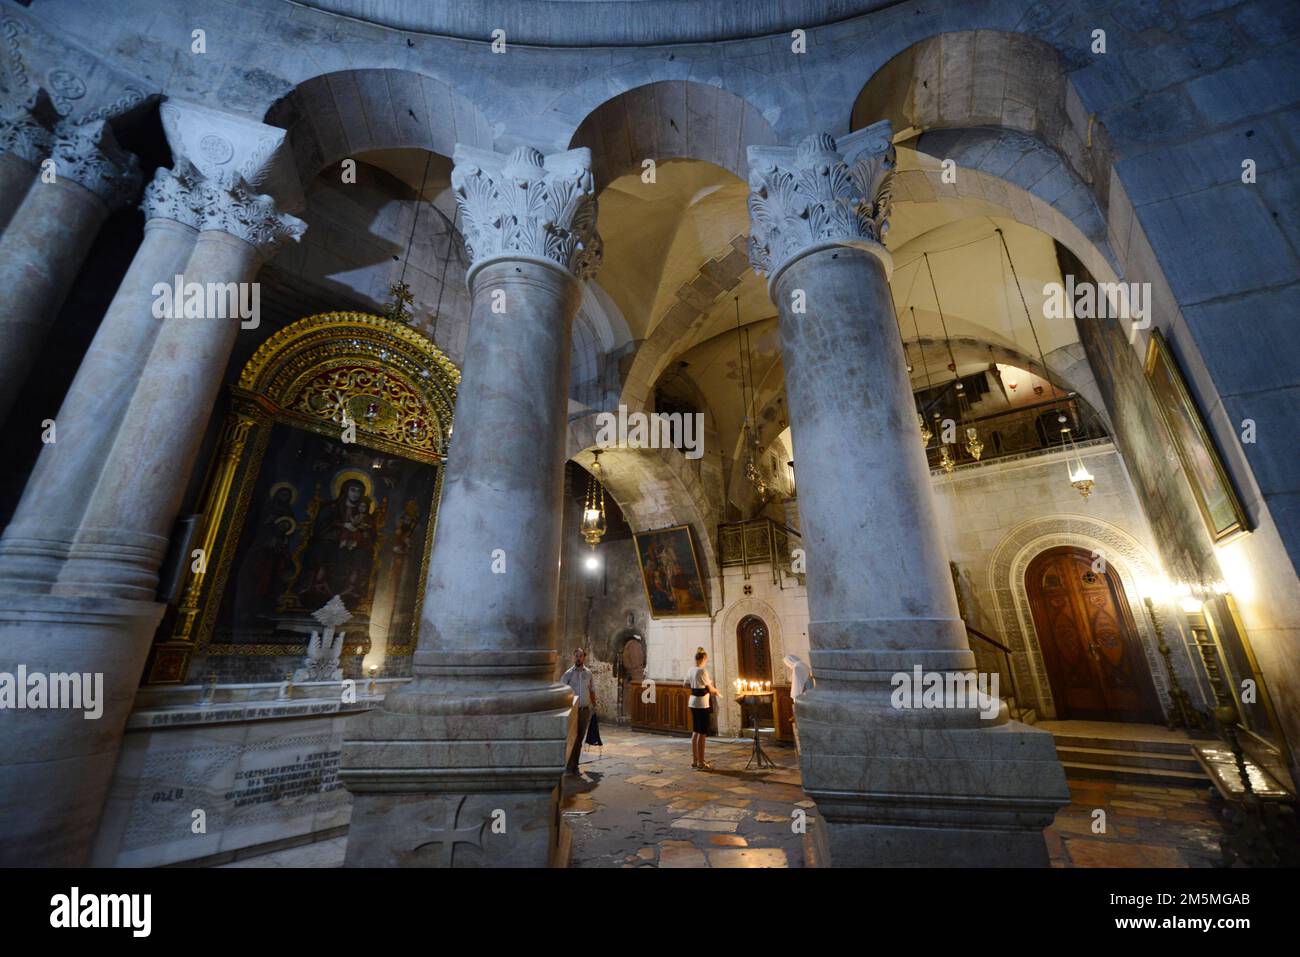 À l'intérieur de l'église du Saint-Spulcher dans le quartier chrétien de la vieille ville de Jérusalem. Banque D'Images